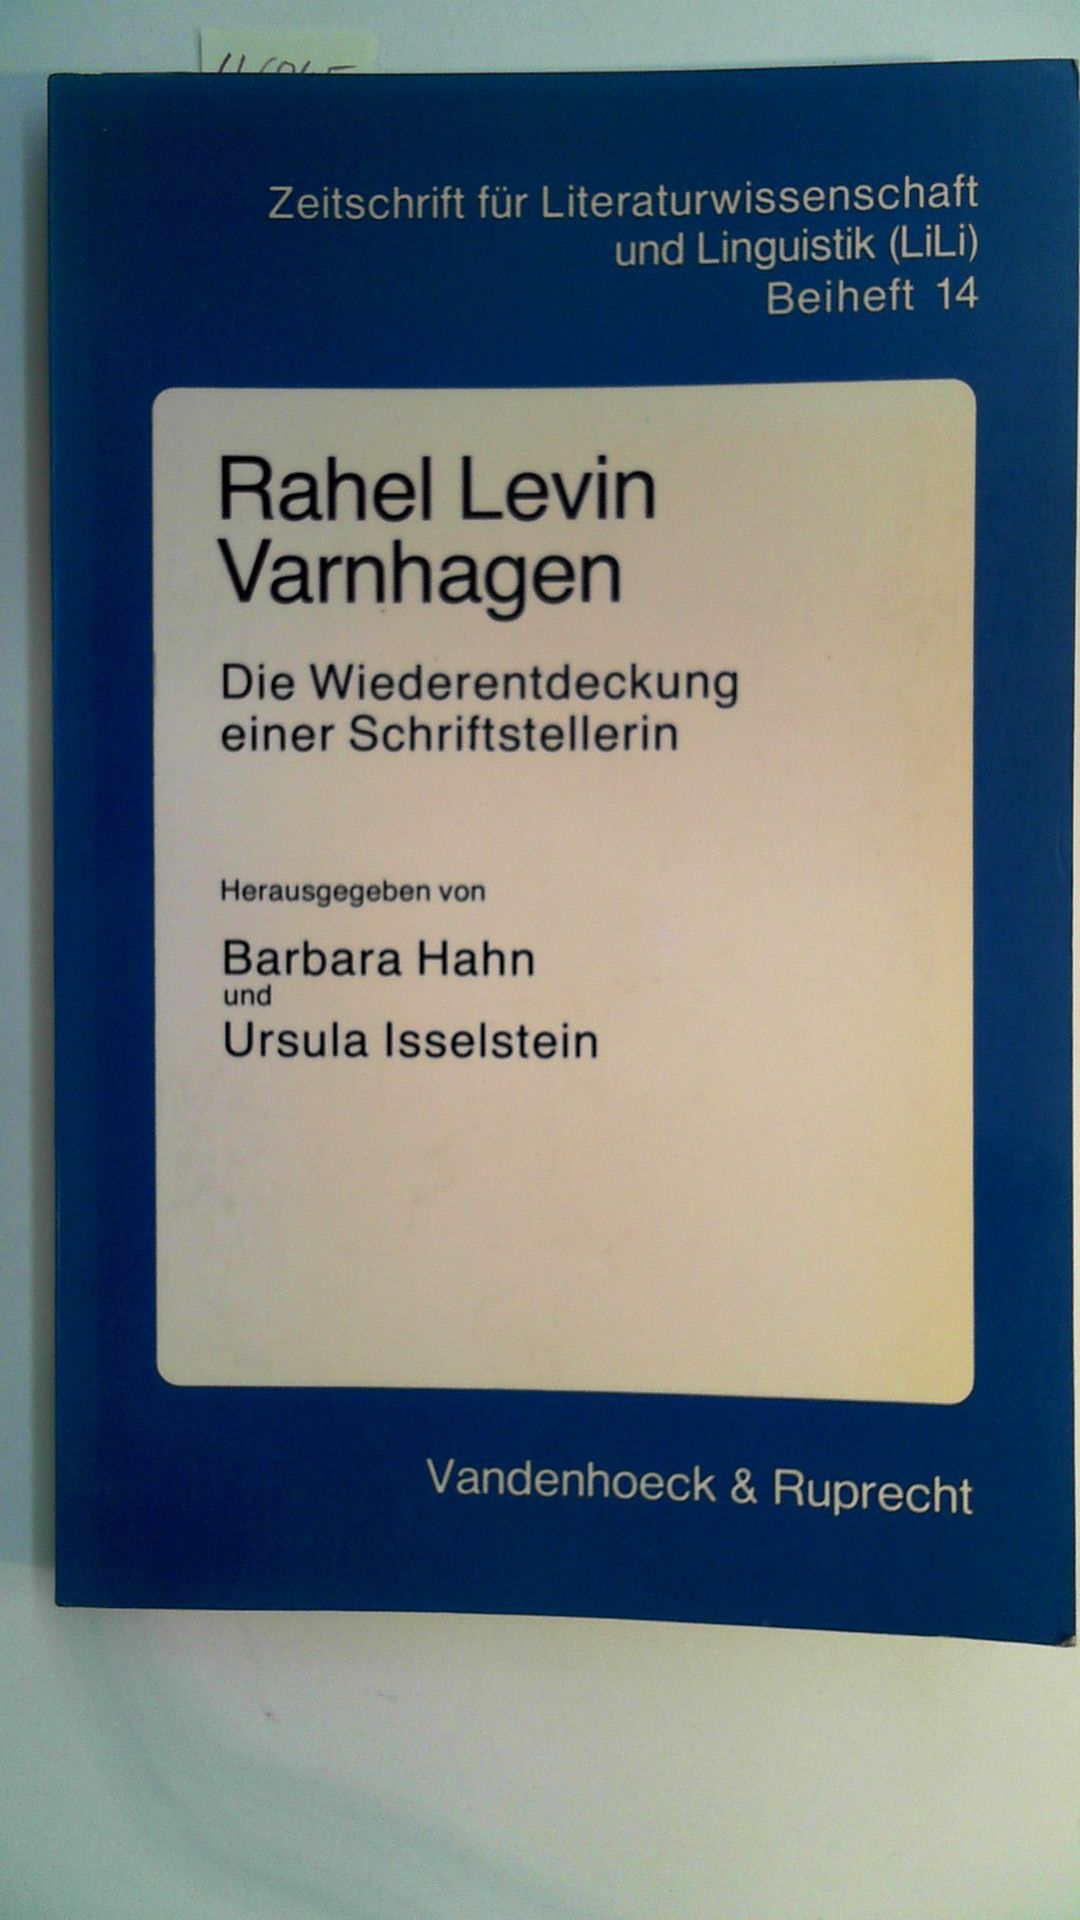 Rahel Levin Varnhagen - Die Wiederentdeckung einer Schriftstellerin, Zeitschrift für Literaturwissenschaft und Linguistik (LiLi) Beiheft 14, - Hahn, Barbara und Ursula Isselstein